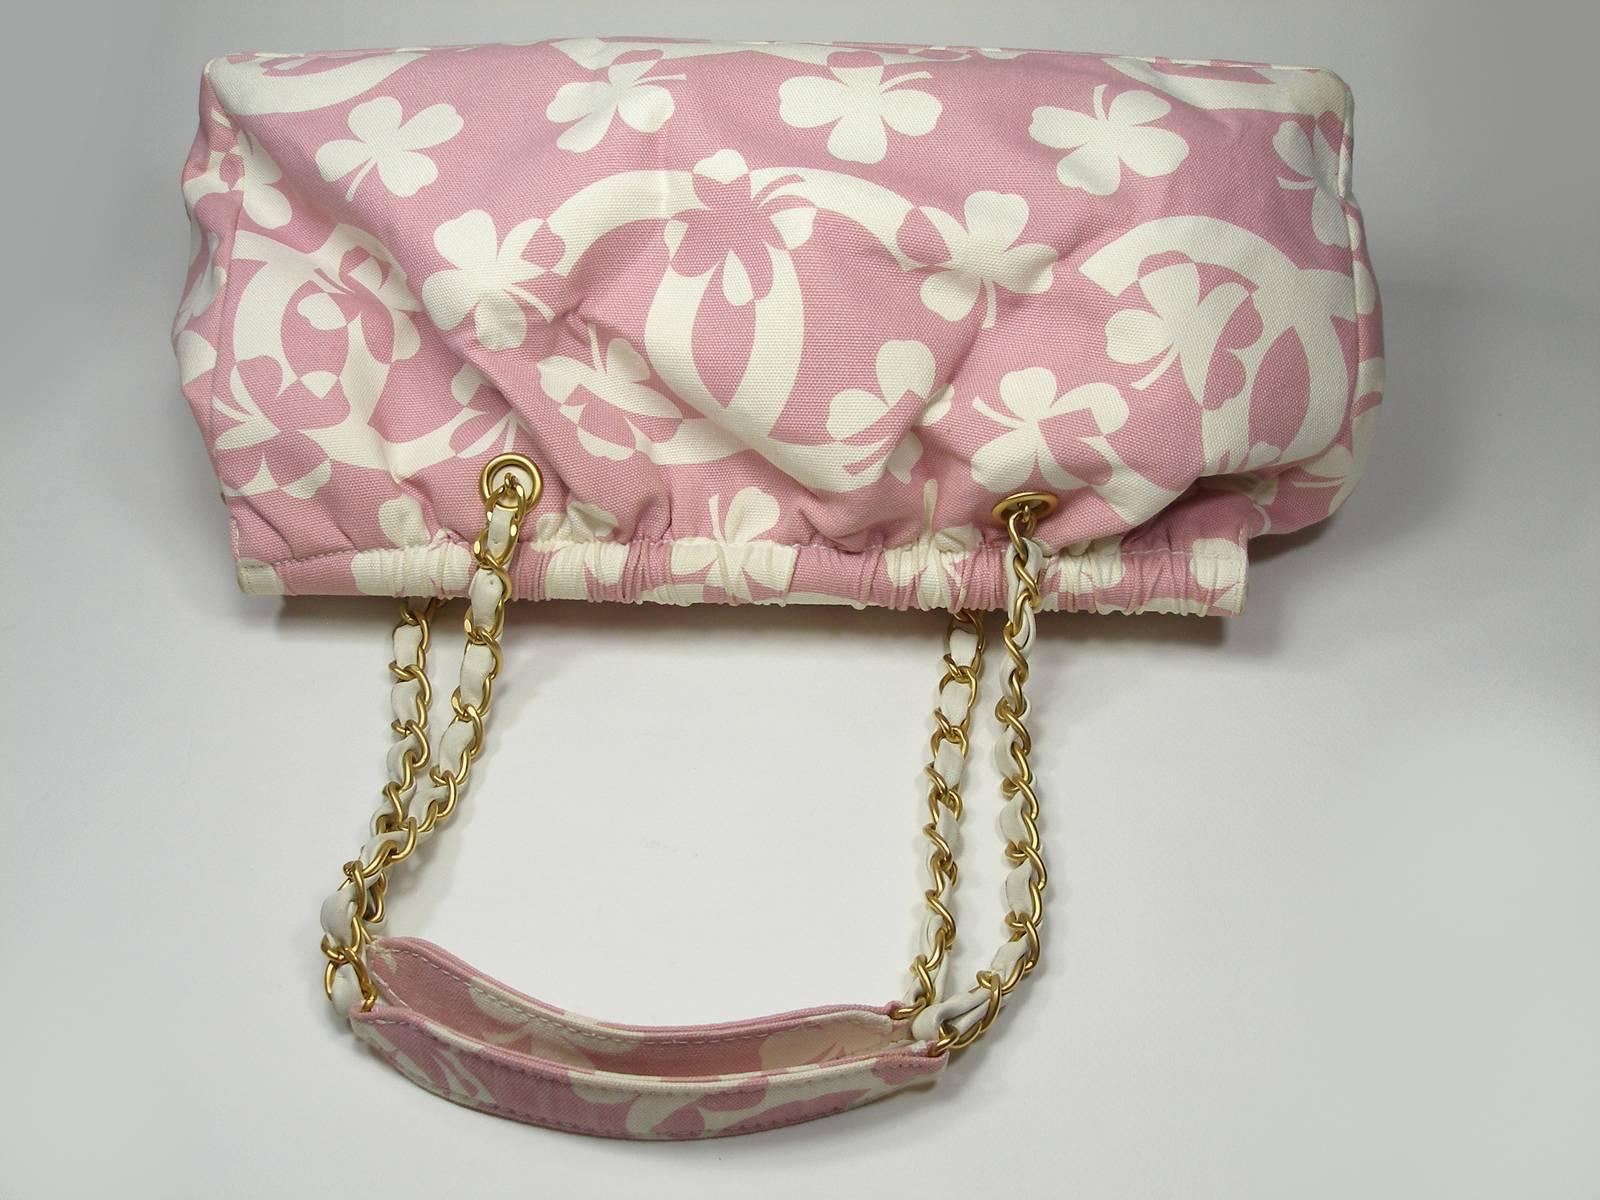  Summer 2004 Chanel Vintage CHANEL Clover chain shoulder bag Pink / Ecru XL Size 7